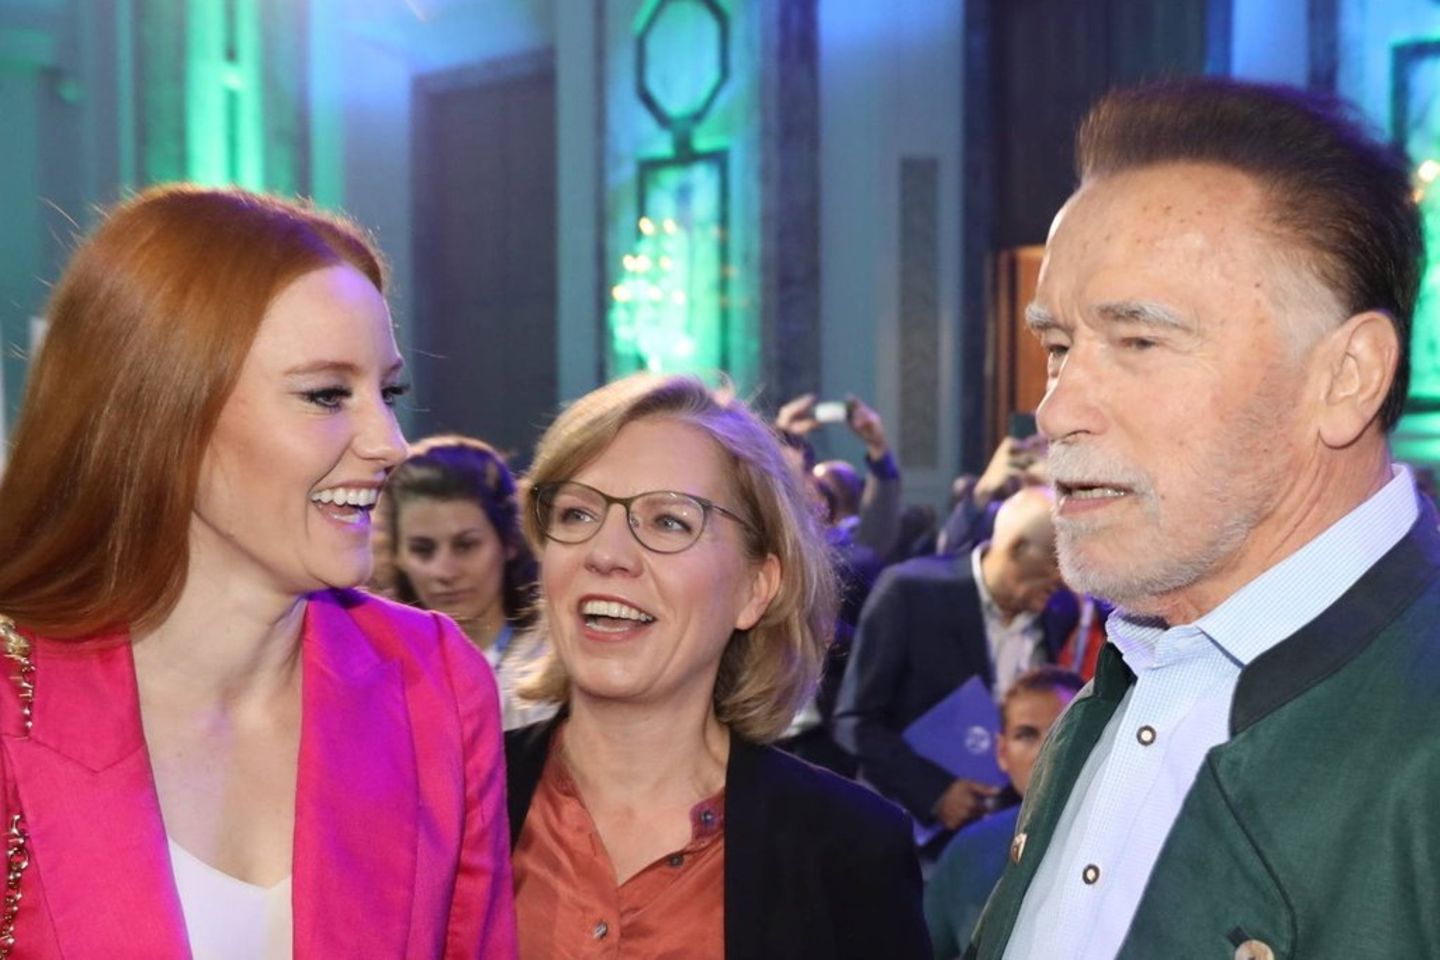 Trafen sich beim Austrian World Summit in Wien: Barbara Meier und Arnold Schwarzenegger.